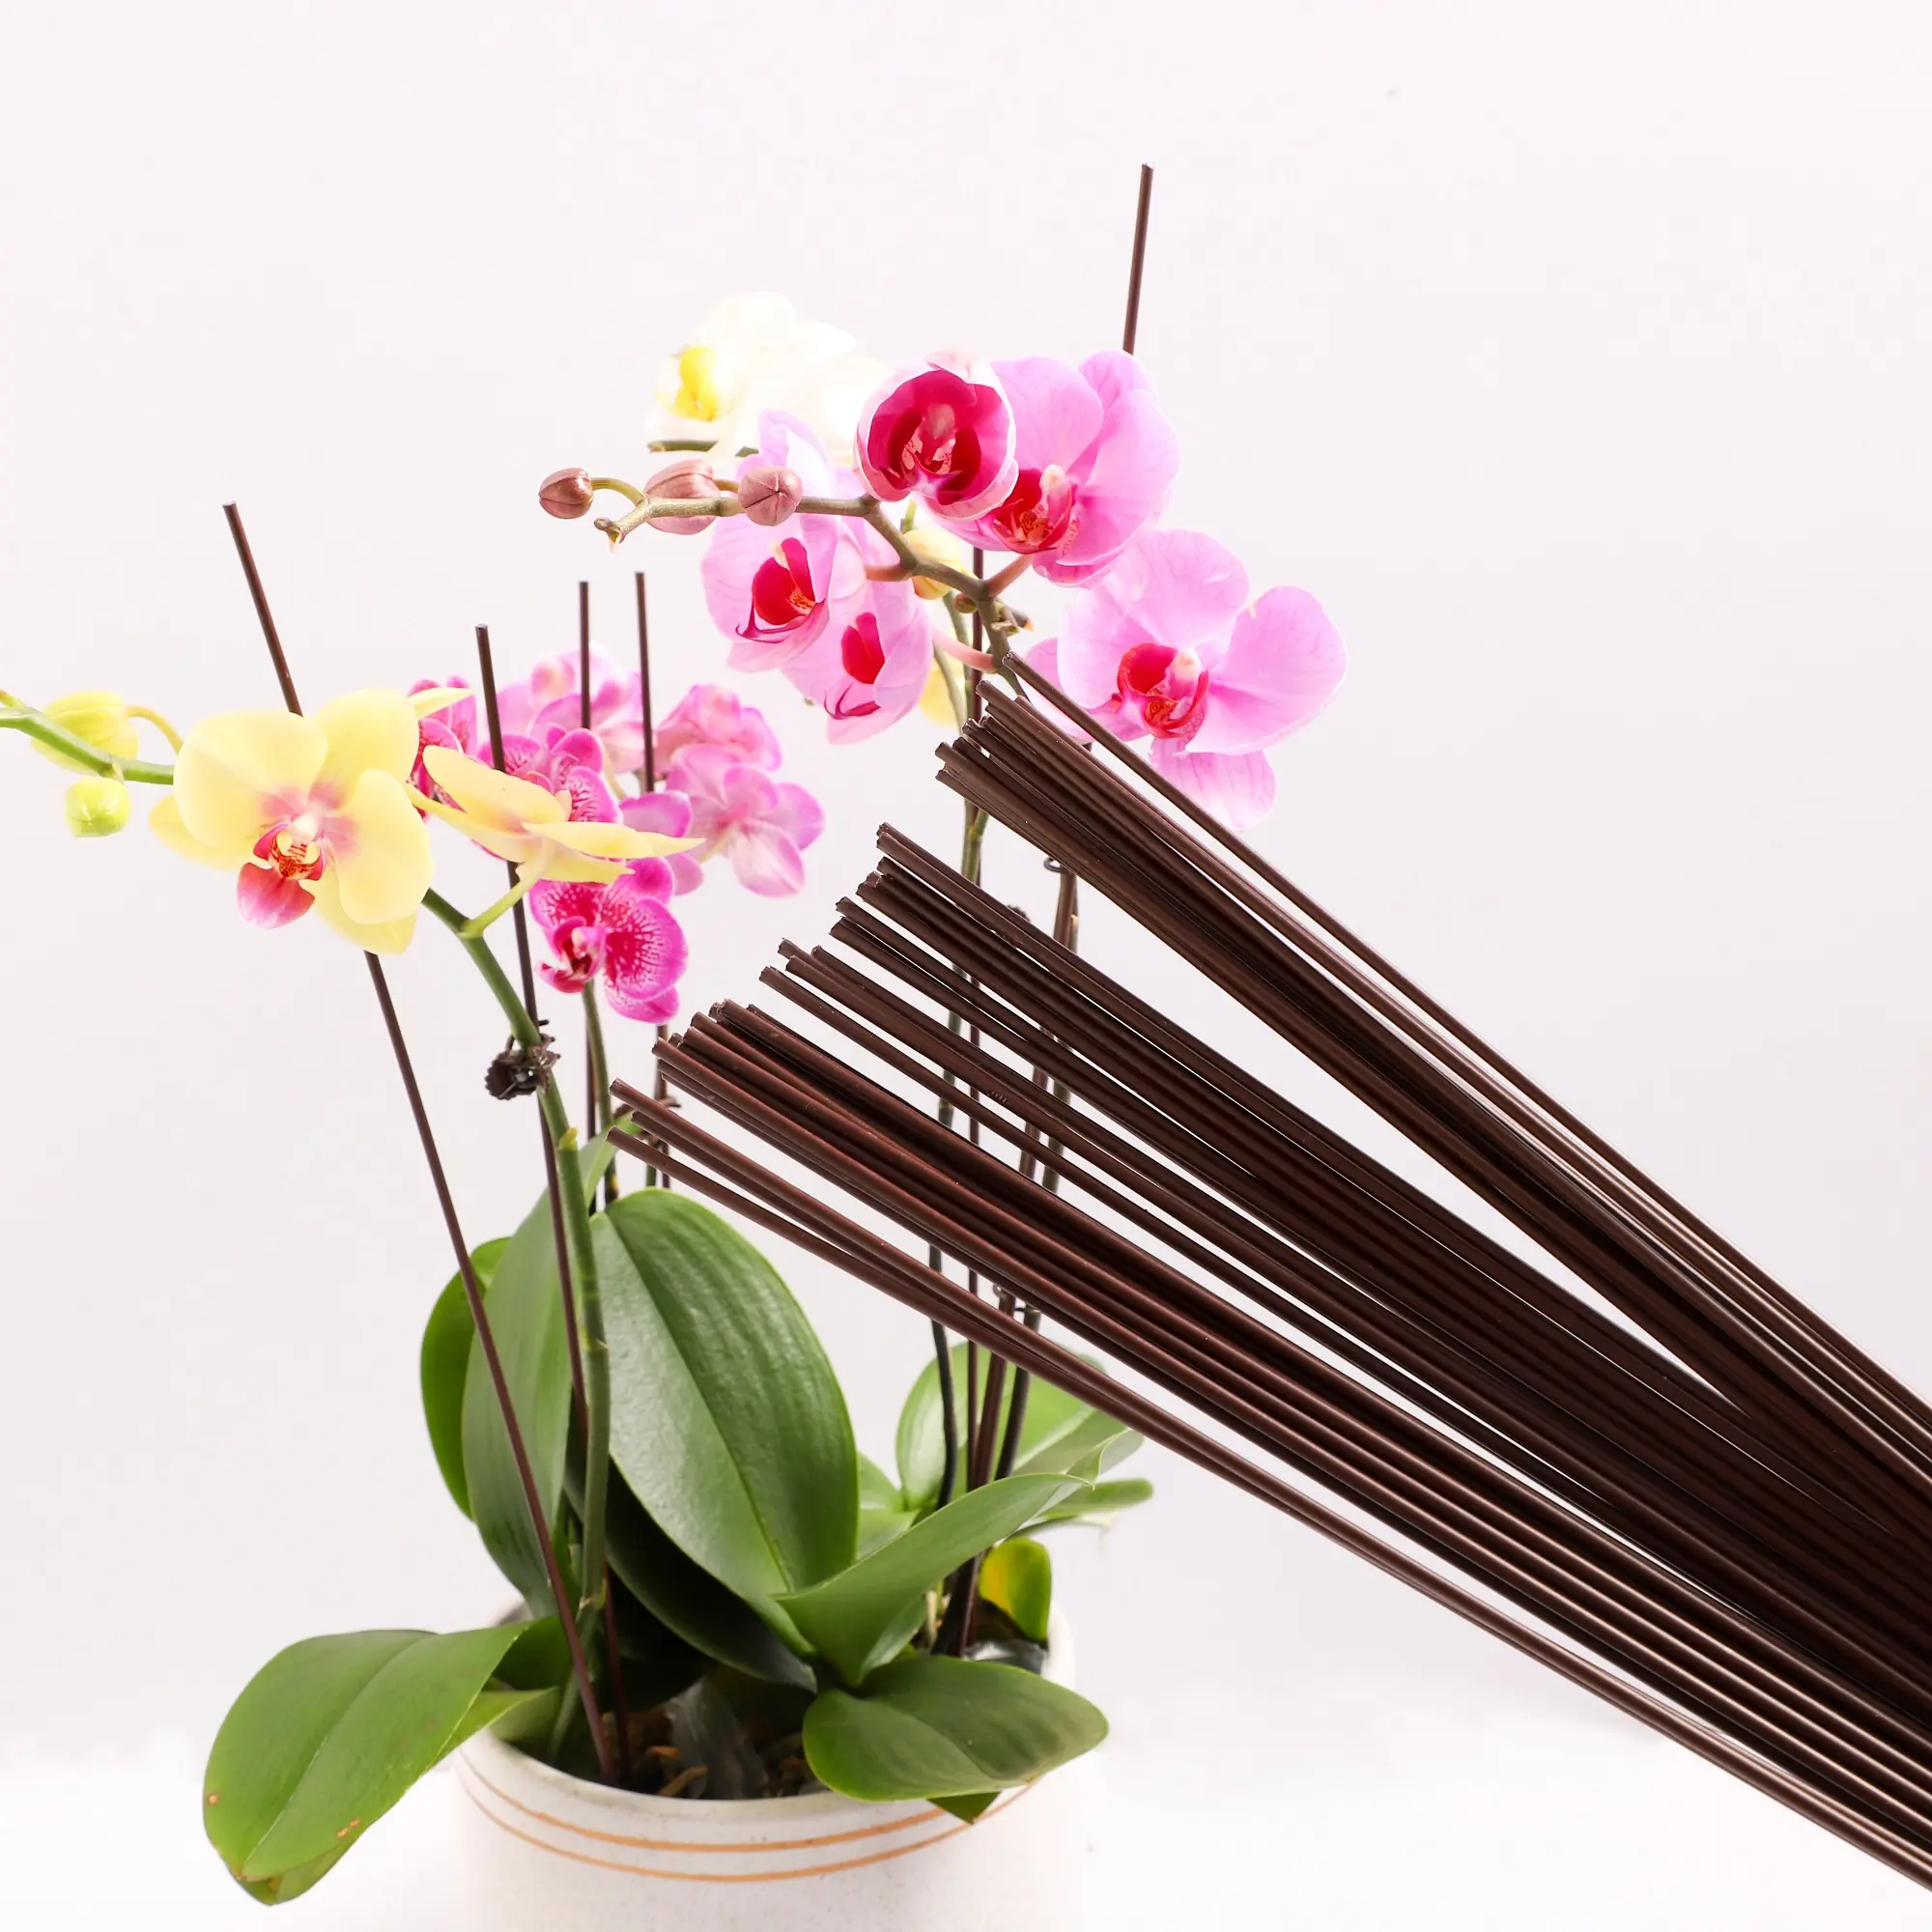 ลวดโลหะฝีมือประณีตสําหรับดอกไม้ผ้าไหมและเครื่องมือทํางานฝีมือ DIY การจัดดอกไม้